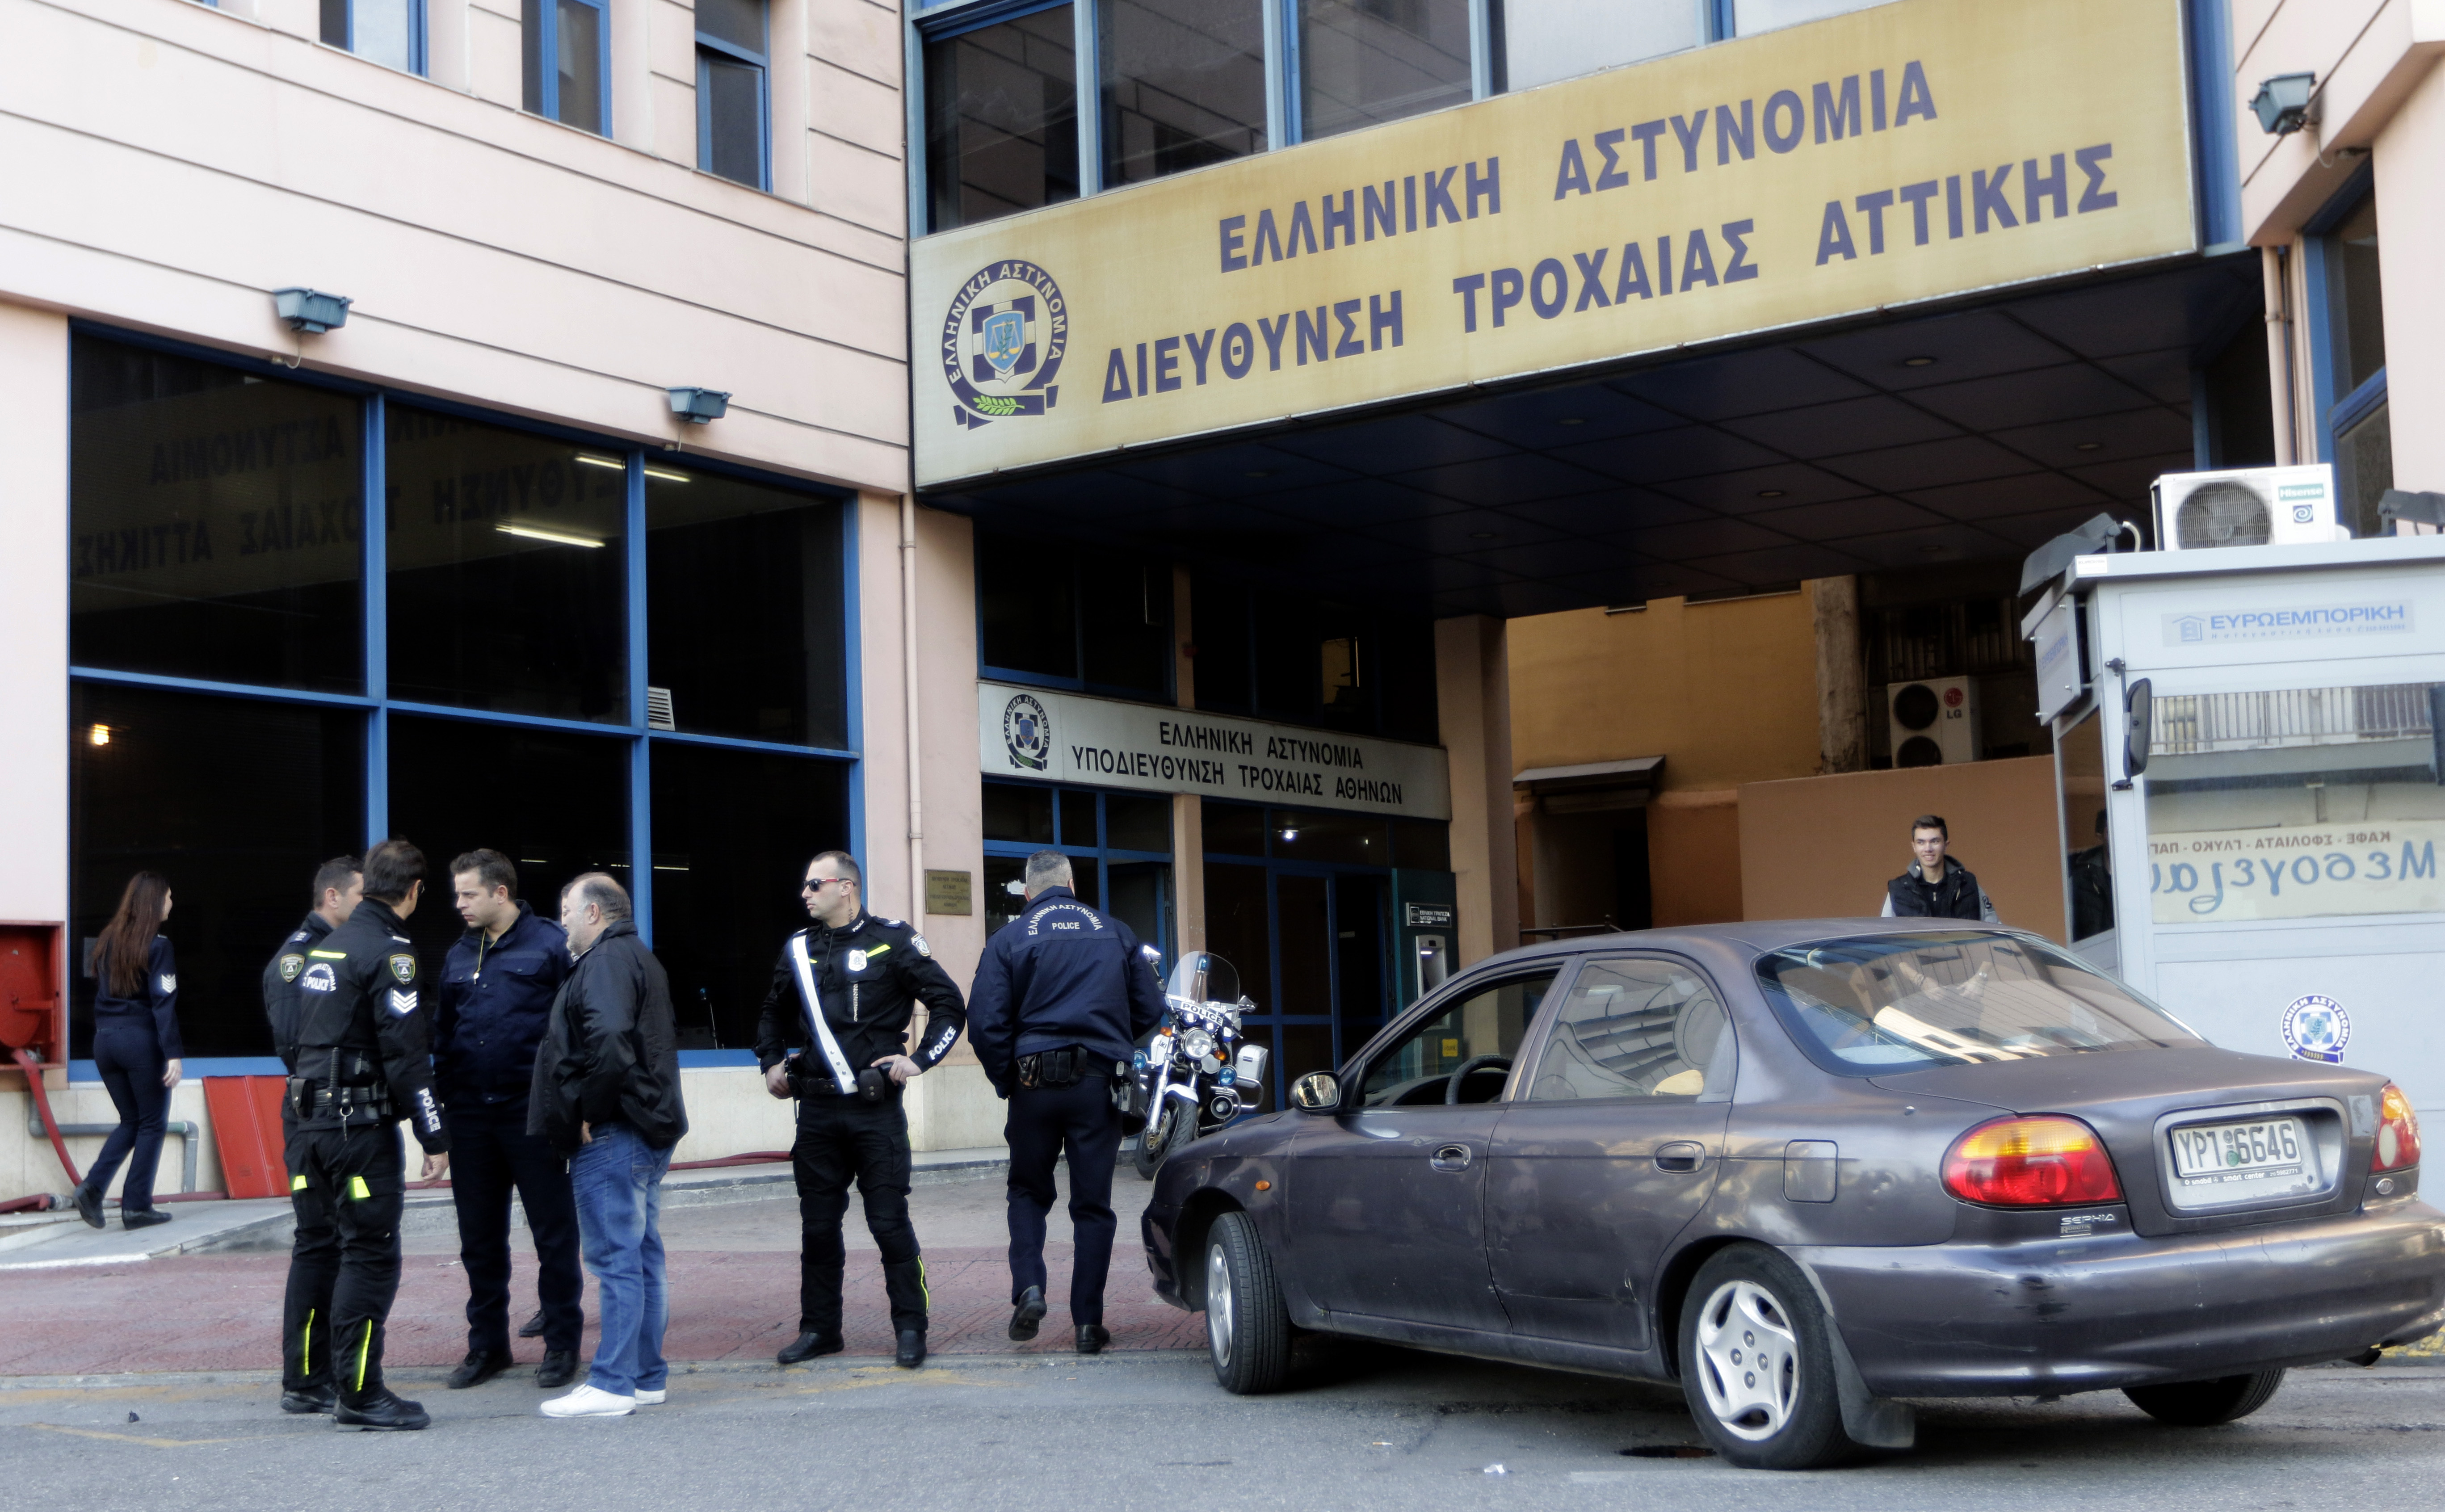 Πυροβολισμοί έξω από την Τροχαία Αθηνών [Εικόνες]